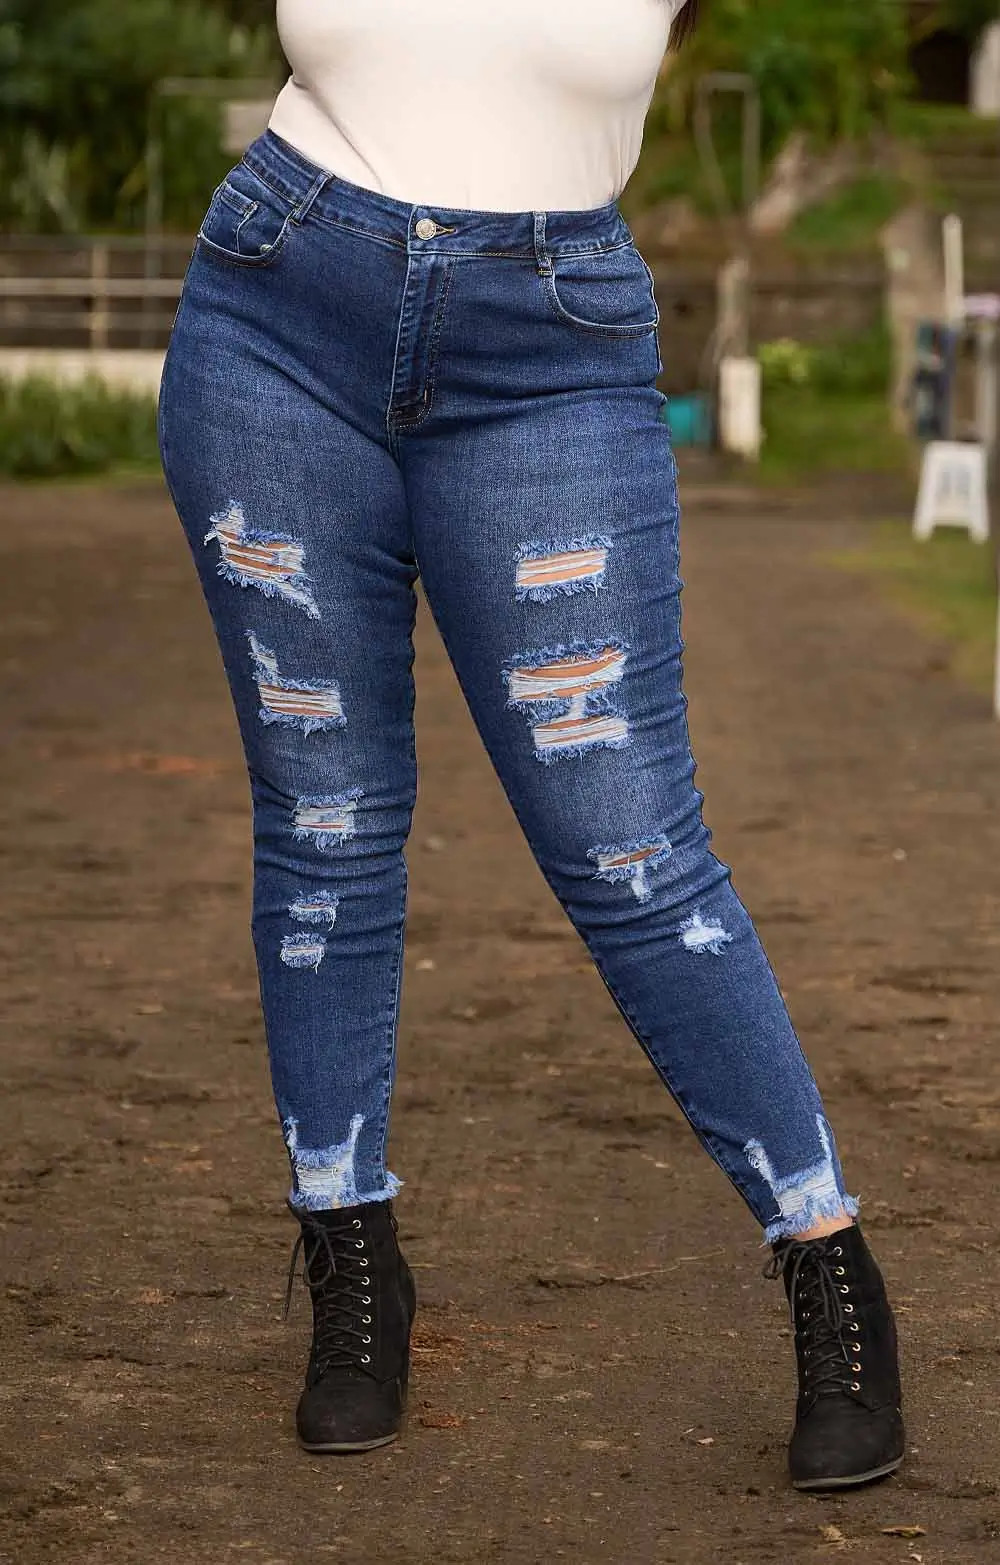 Ce jeans brut apporte une touche rebelle à votre look. Déchiré sur le devant et le bas des jambes, il est votre allié rock. Moulant et extensible, il épouse parfaitement les courbes. On craque pour son confort et son style.